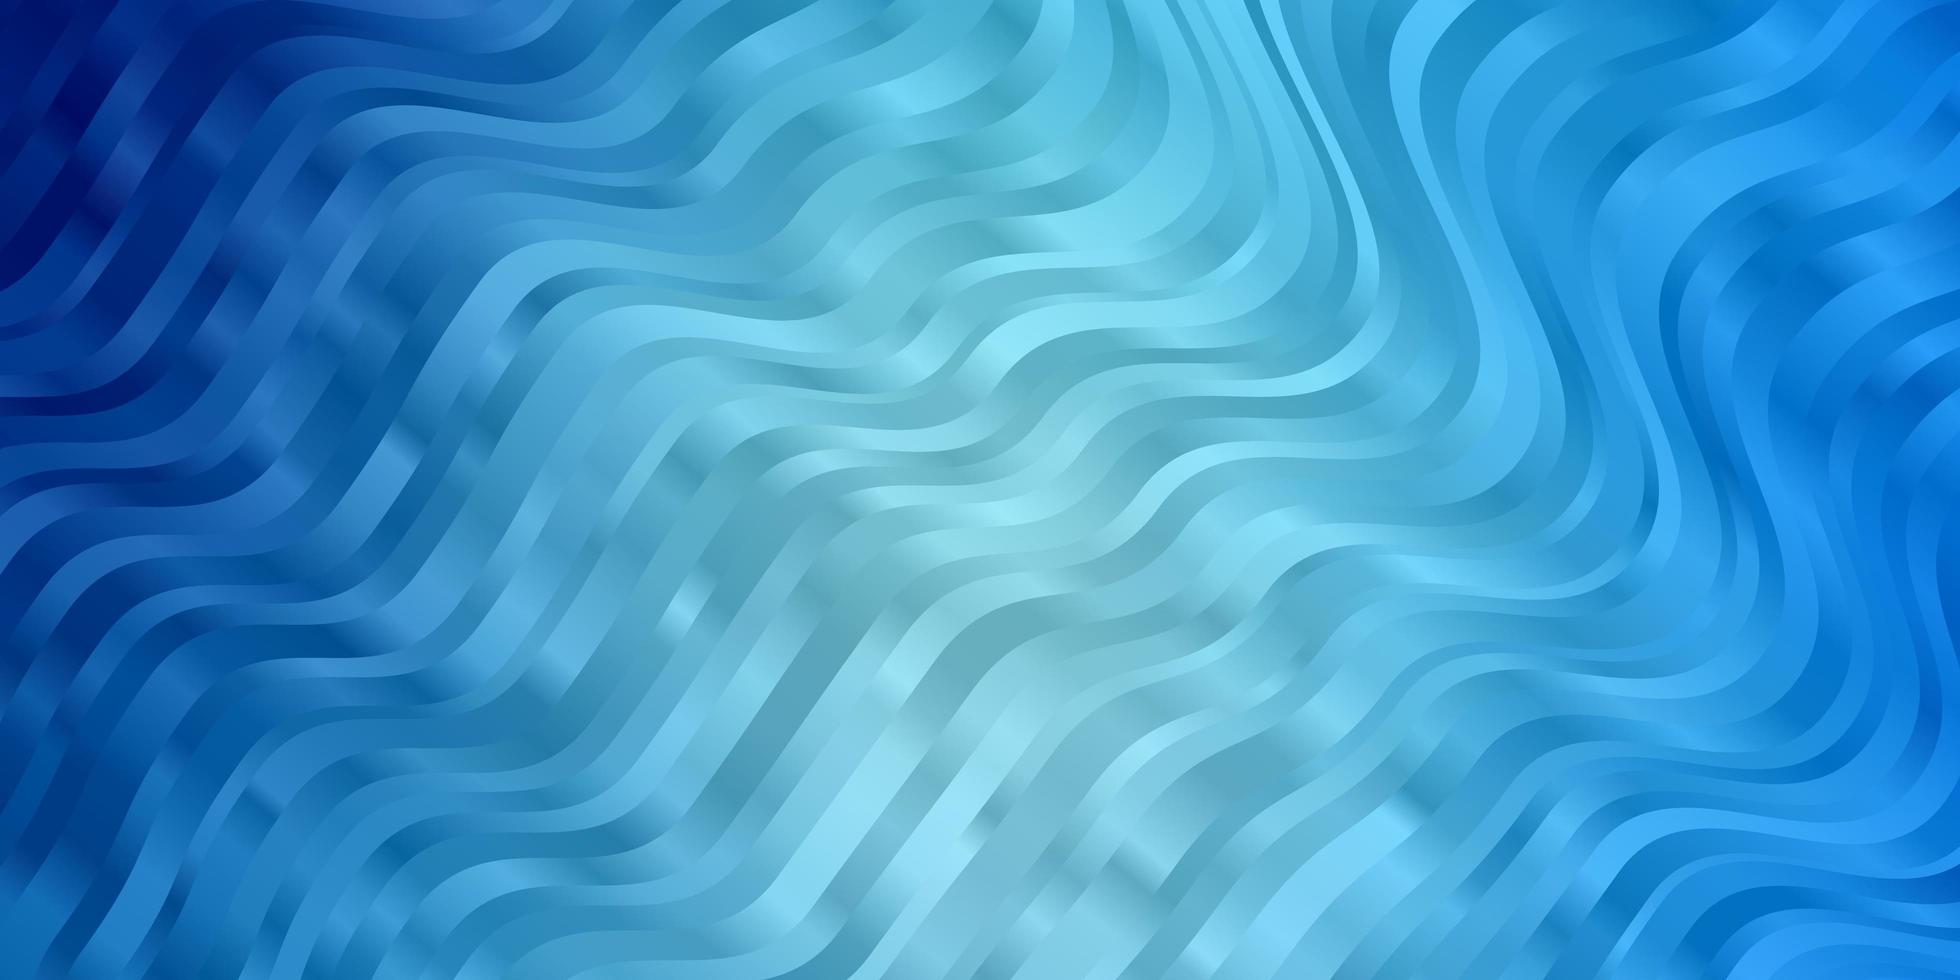 ljusblå vektormönster med sneda linjer. färgstark illustration, som består av kurvor. mönster för broschyrer, broschyrer. vektor